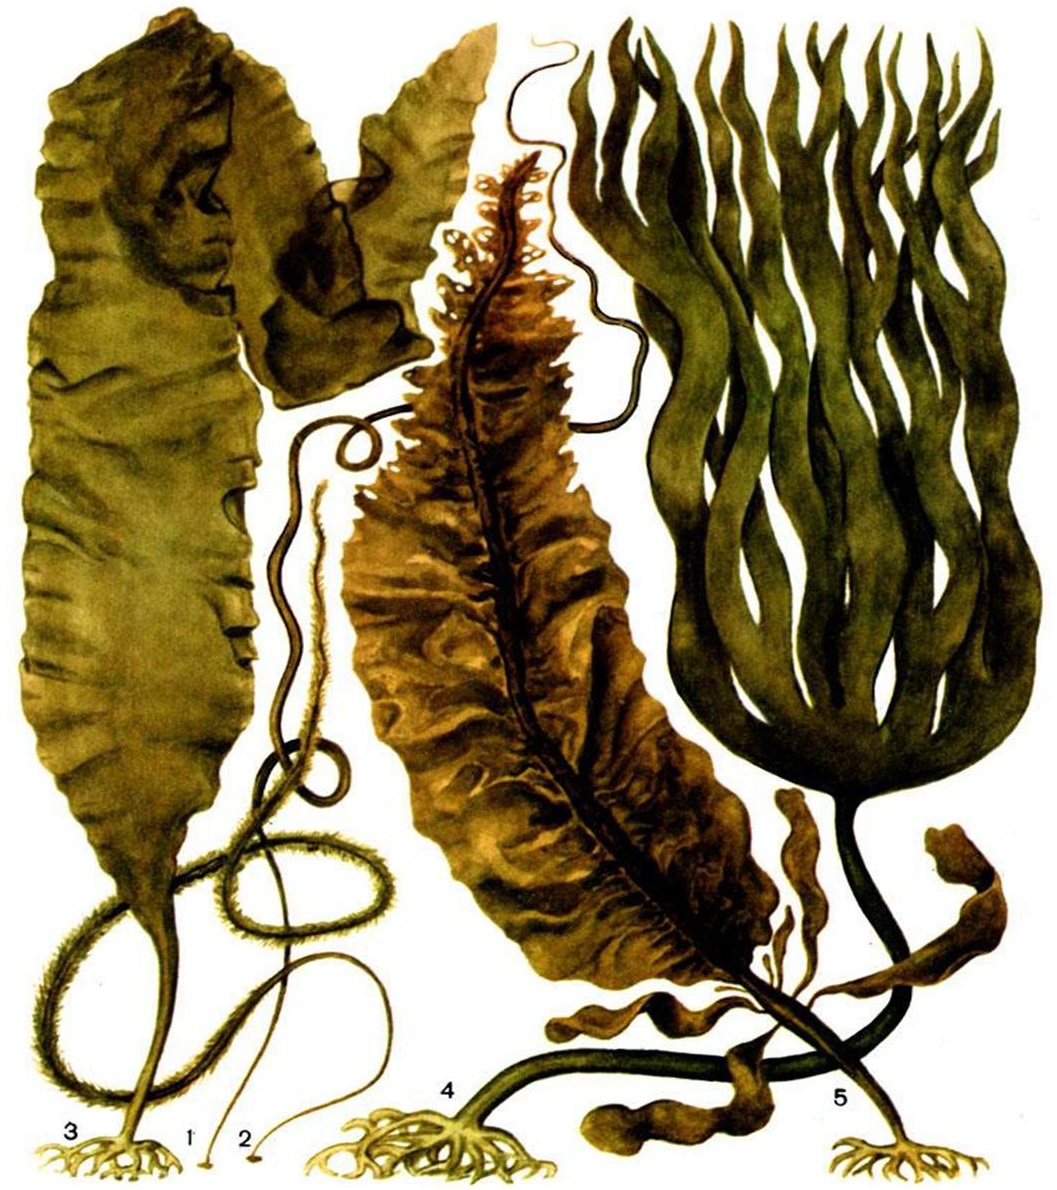 Лошадиная водоросль. Бурые водоросли ламинария. Ламинариевые бурые водоросли. Ламинария дигитата. Отдел бурые водоросли – Phaeophyta.